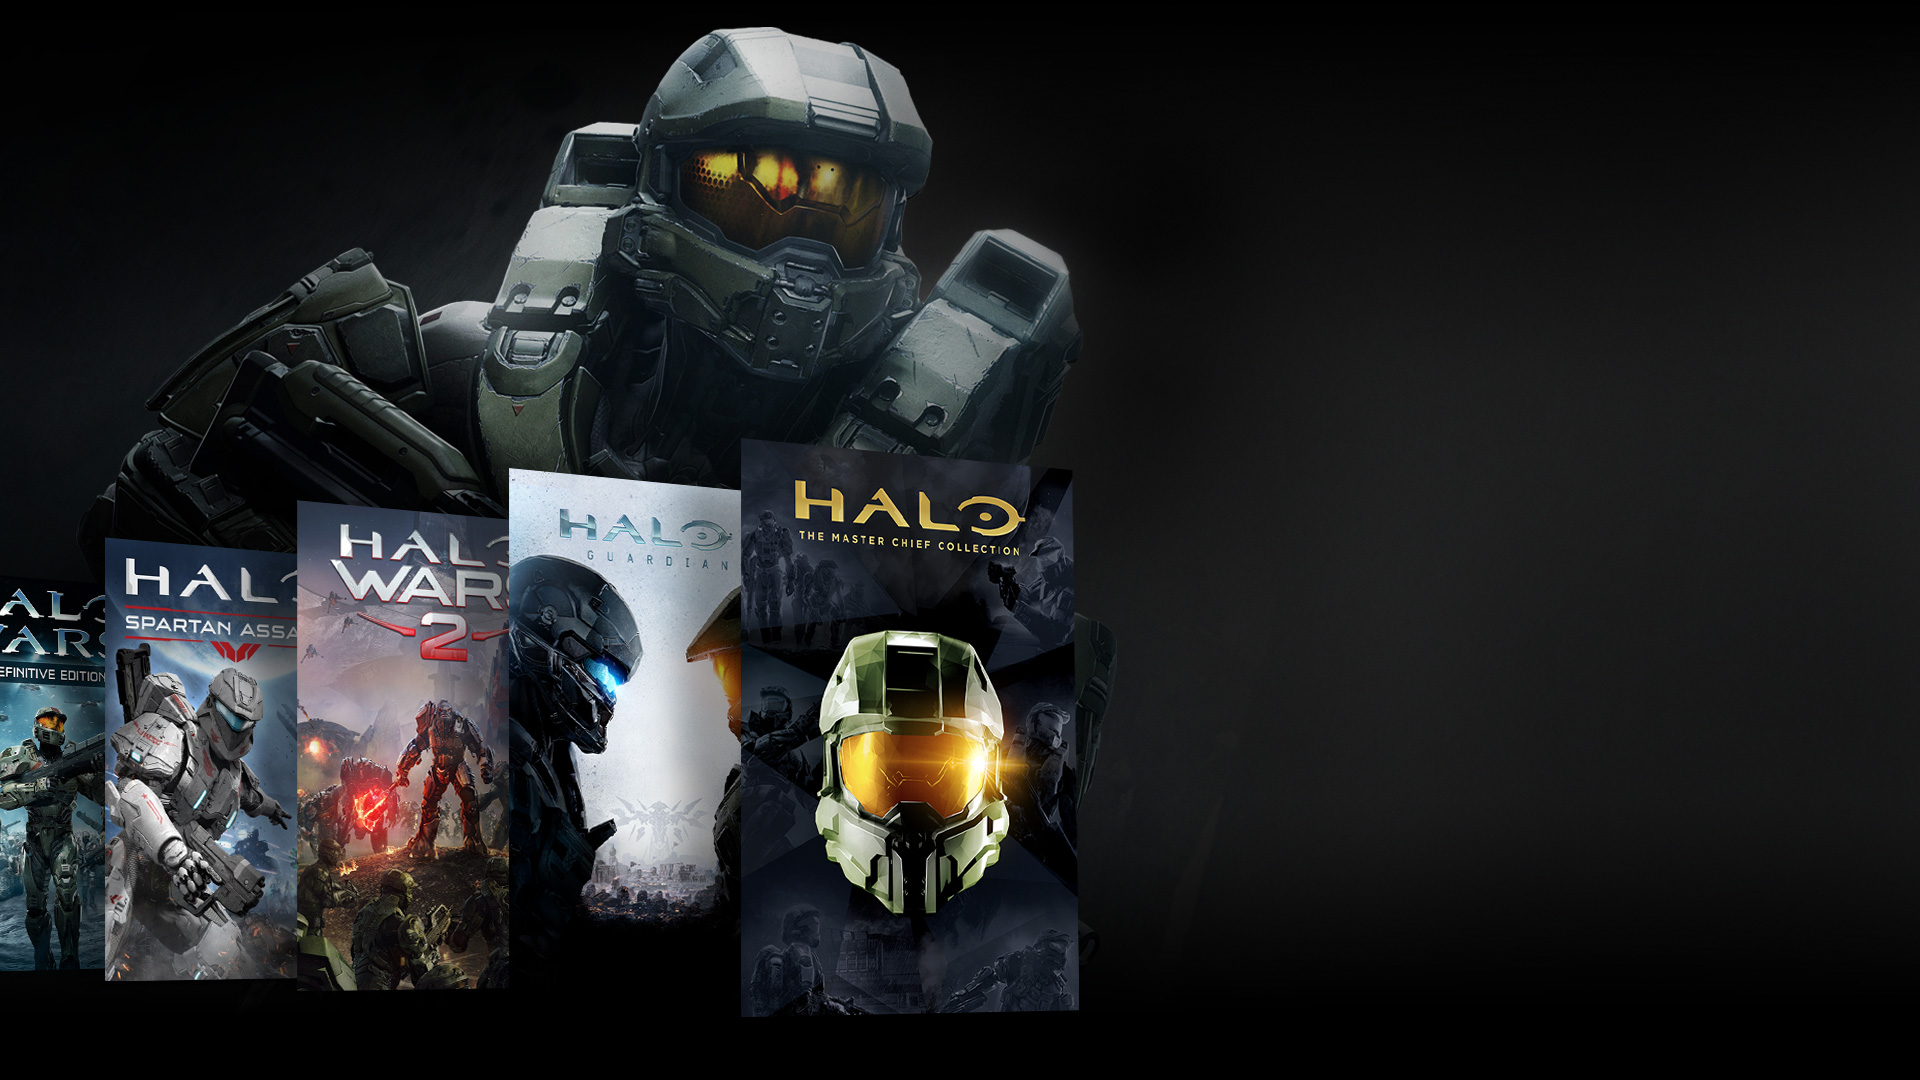 Elülső nézet egy Halo karakterről, amint a Halo játékok kollázsa mögött áll